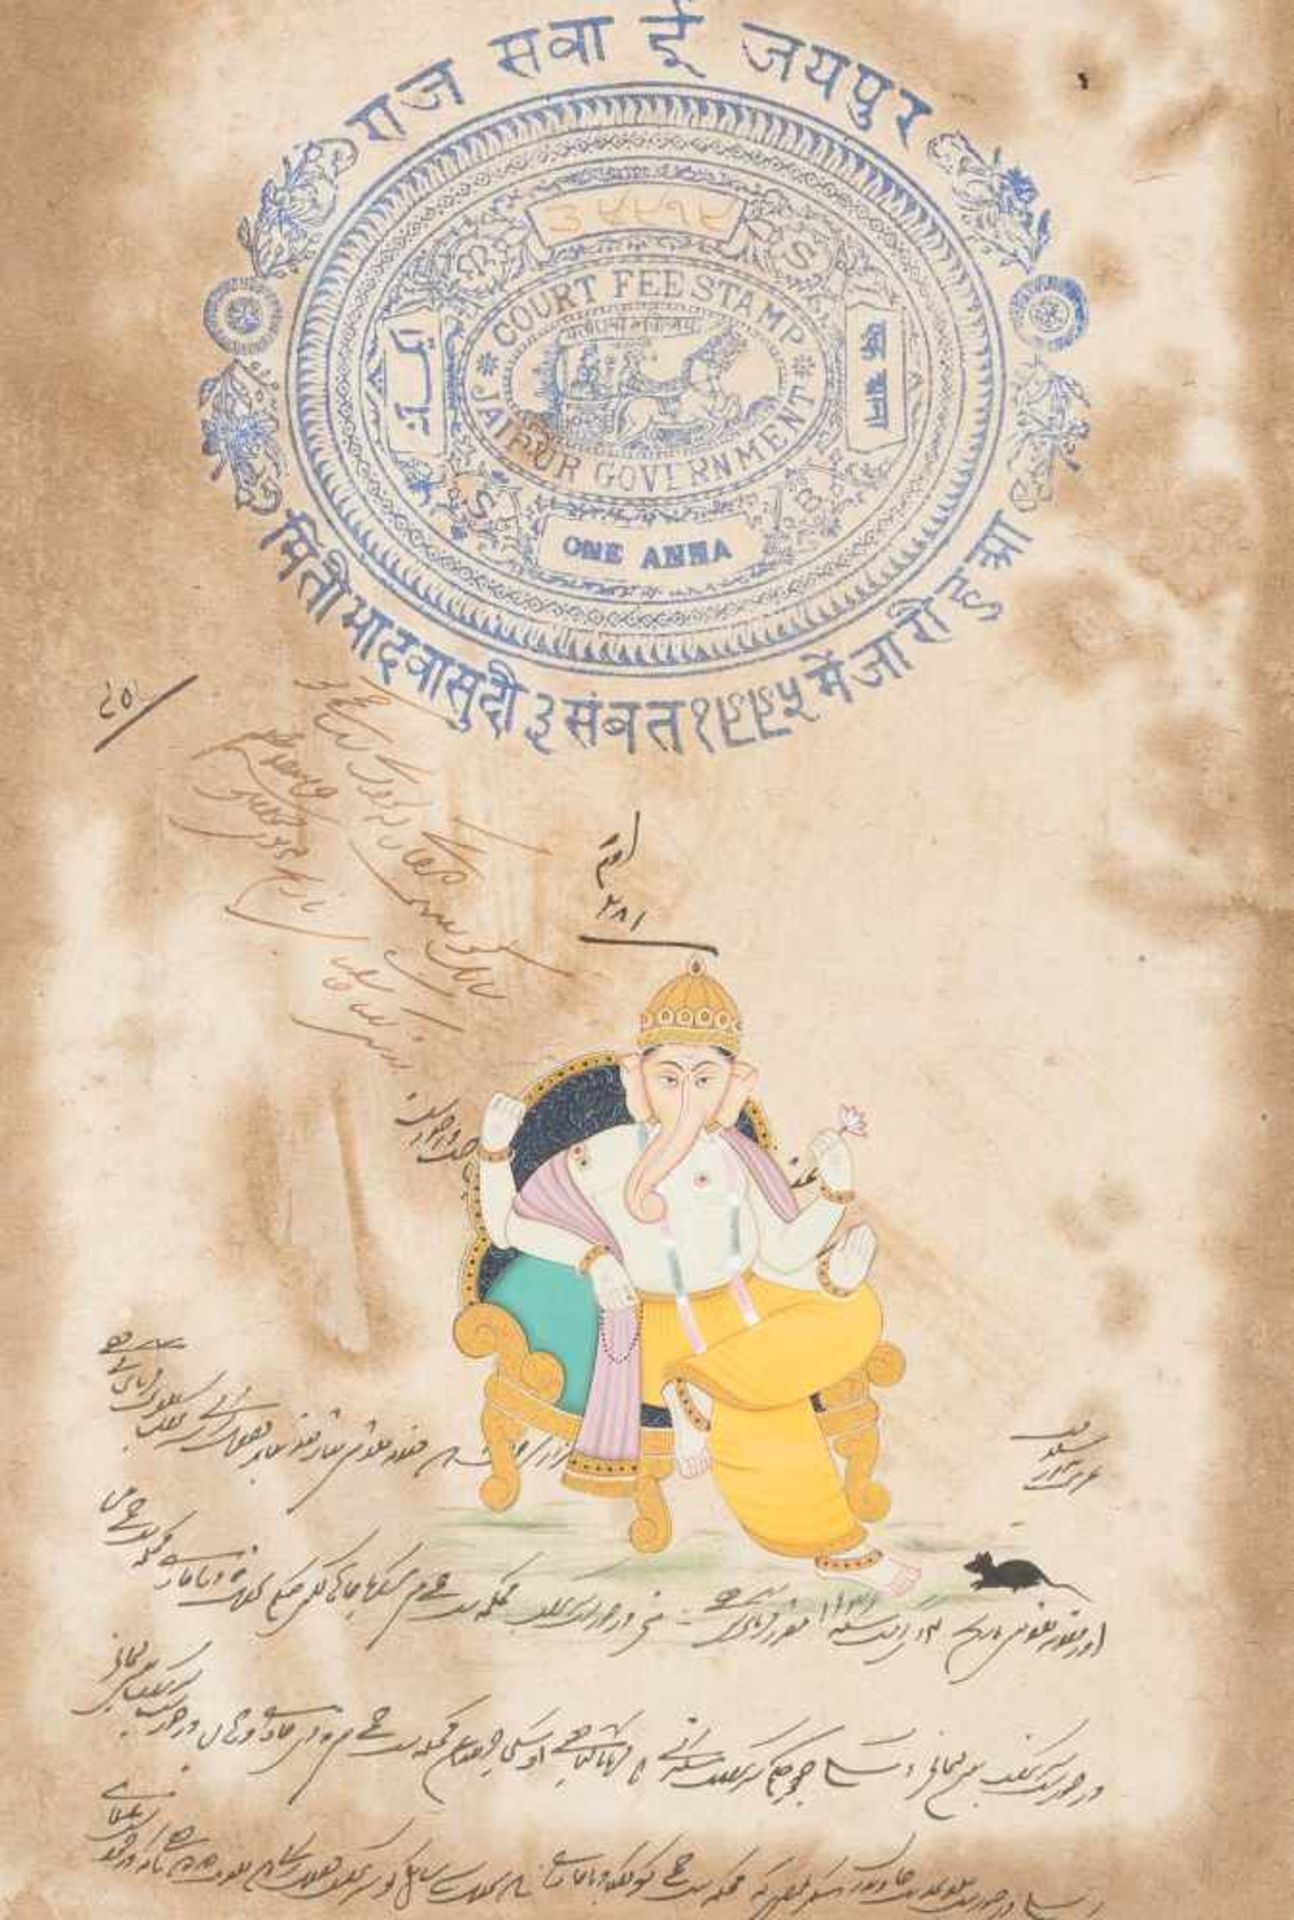 SITZENDE GOTTHEIT: GENESHA Indien, wohl um 1900 Gemalt und gedruckt. SM. 31 xm x 21 cm, R. 41 cm x